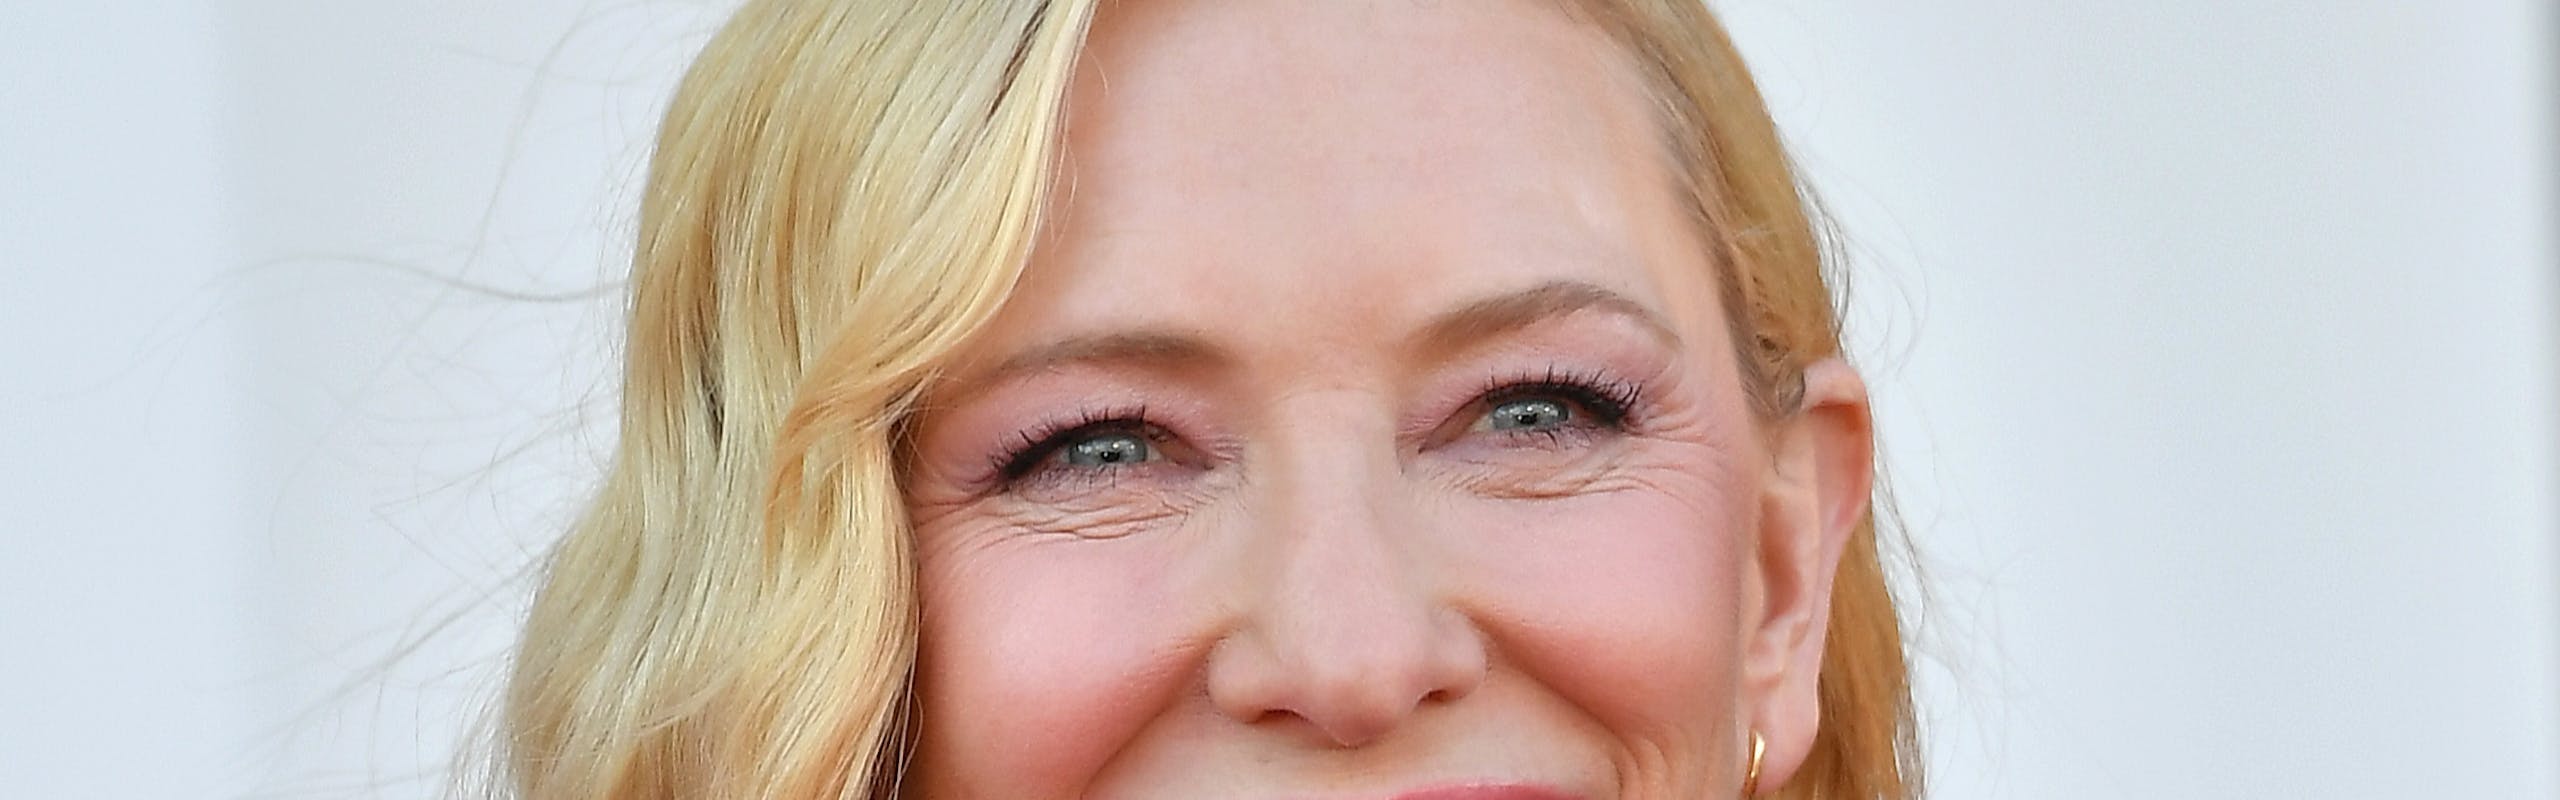 Cate Blanchett, nata sotto il segno del Toro, festeggia il compleanno il 14 maggio (Getty Images)